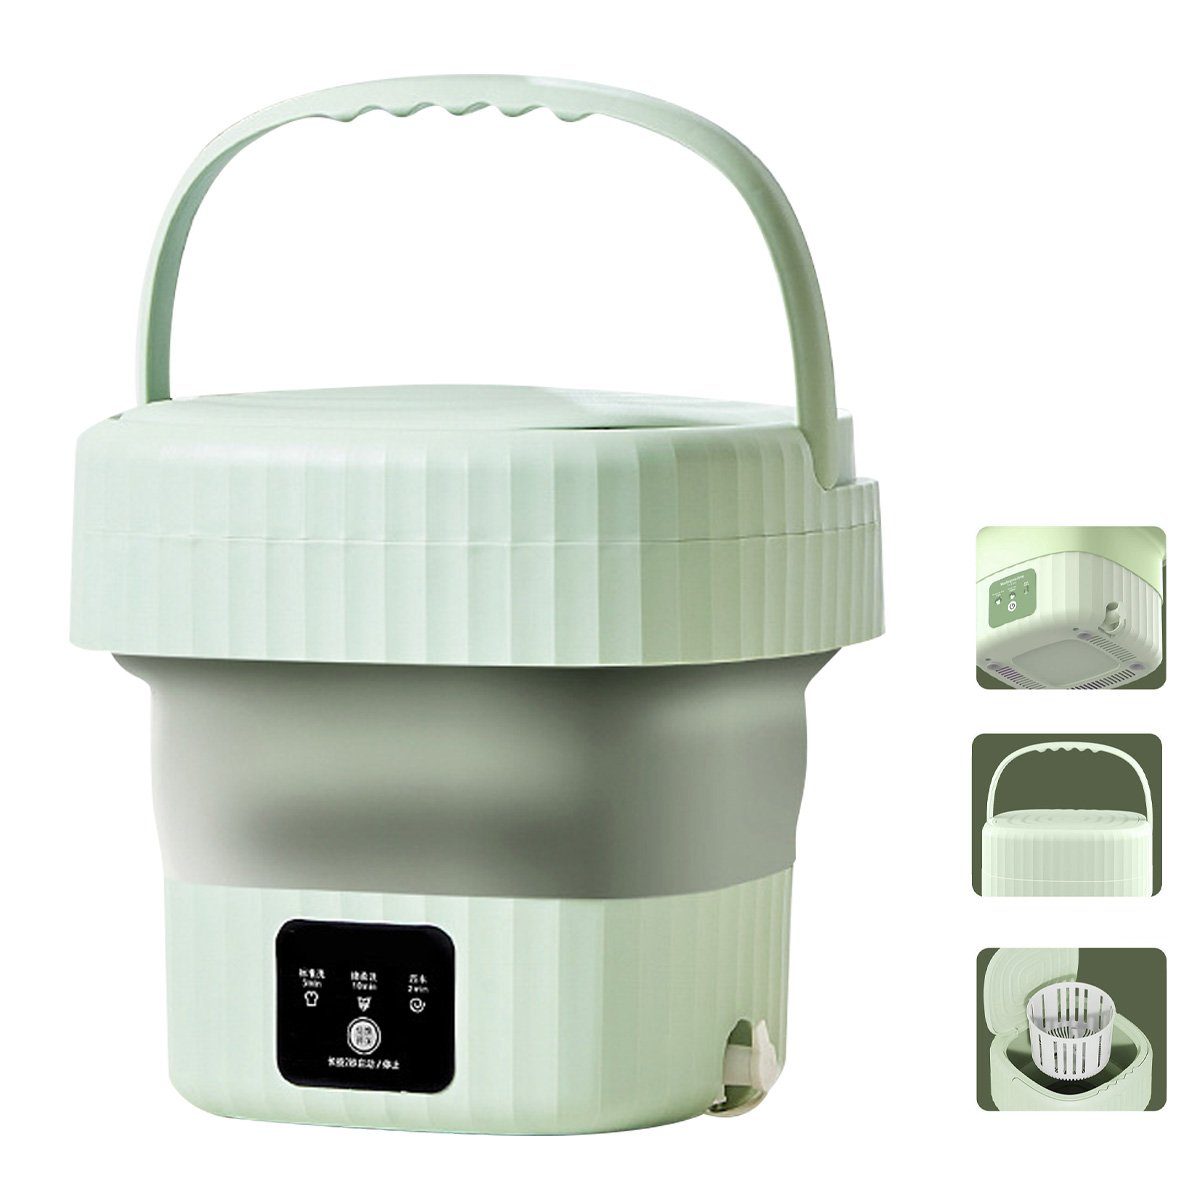 DOPWii Wäscheschleuder Mini Waschmaschine Faltbar,6L Wäschewanne,Für Babykleidung,Unterwäsche, 7200 U/min